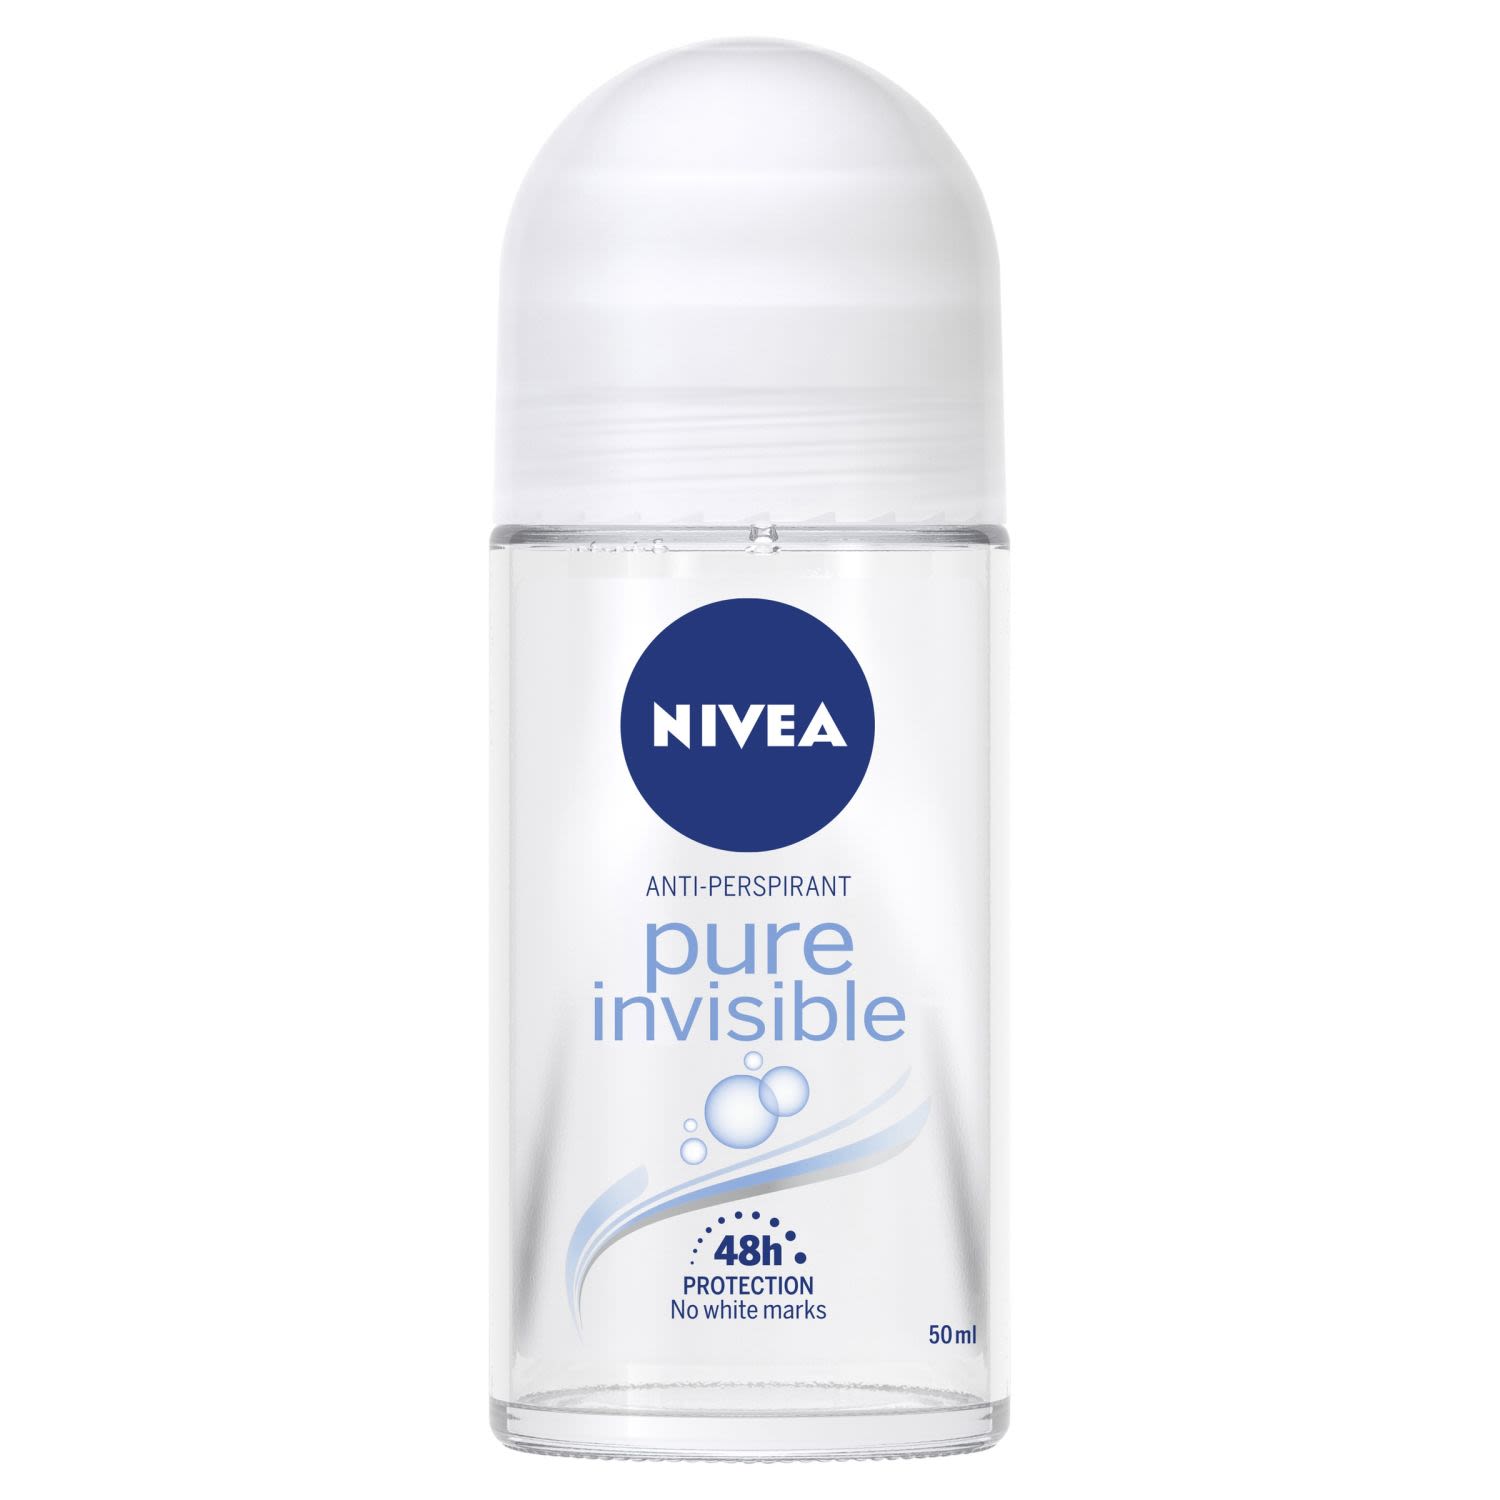 Nivea Pure Invisible Anti-Perspirant Deodorant Roll-On, 50 Millilitre